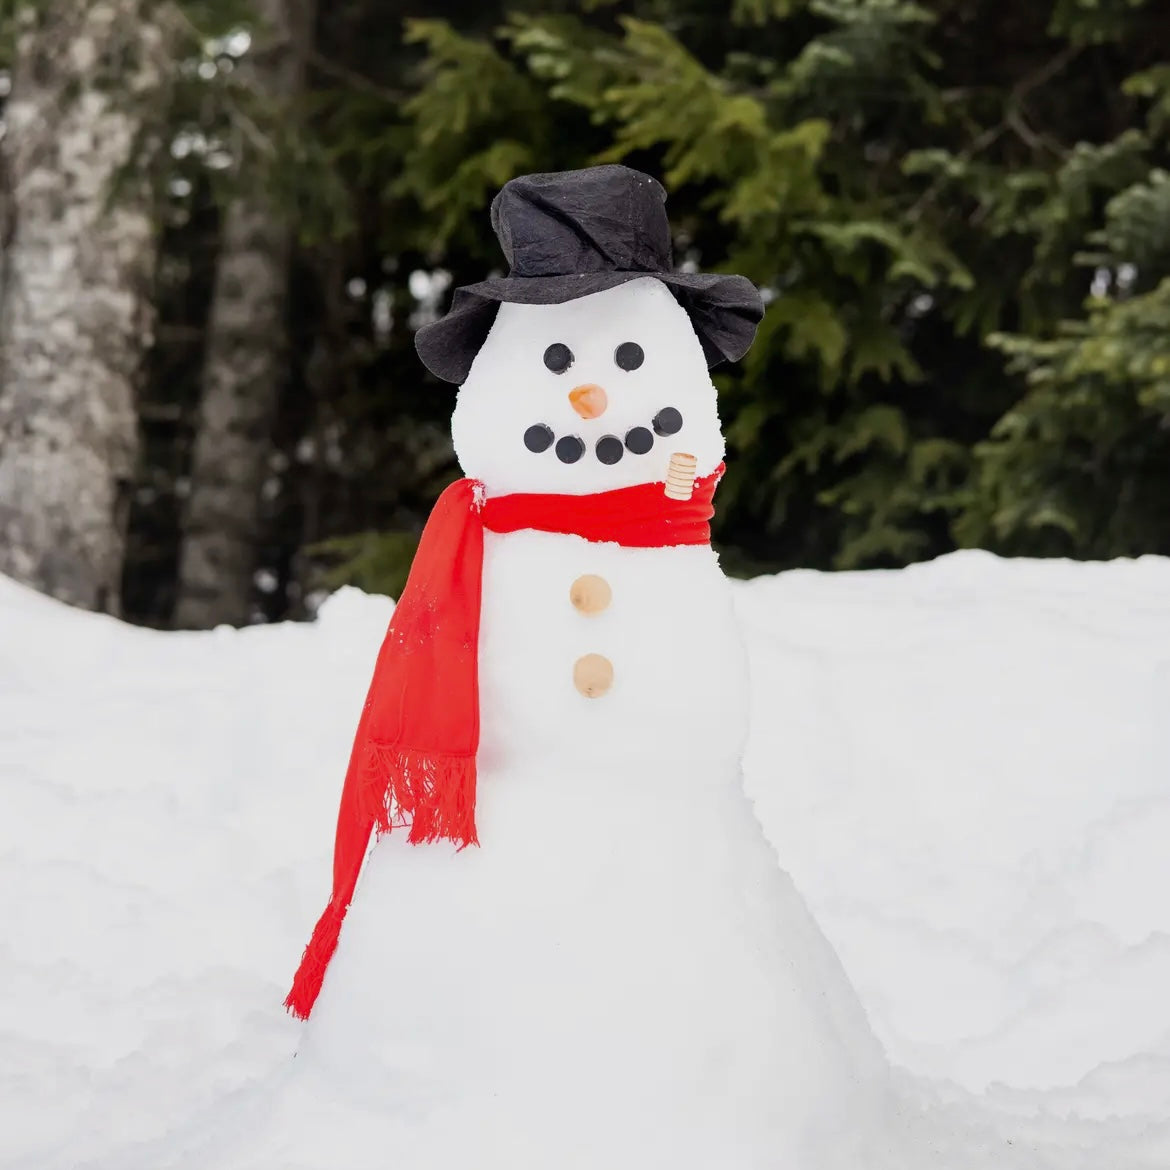 Build Your Own Snowman Kit